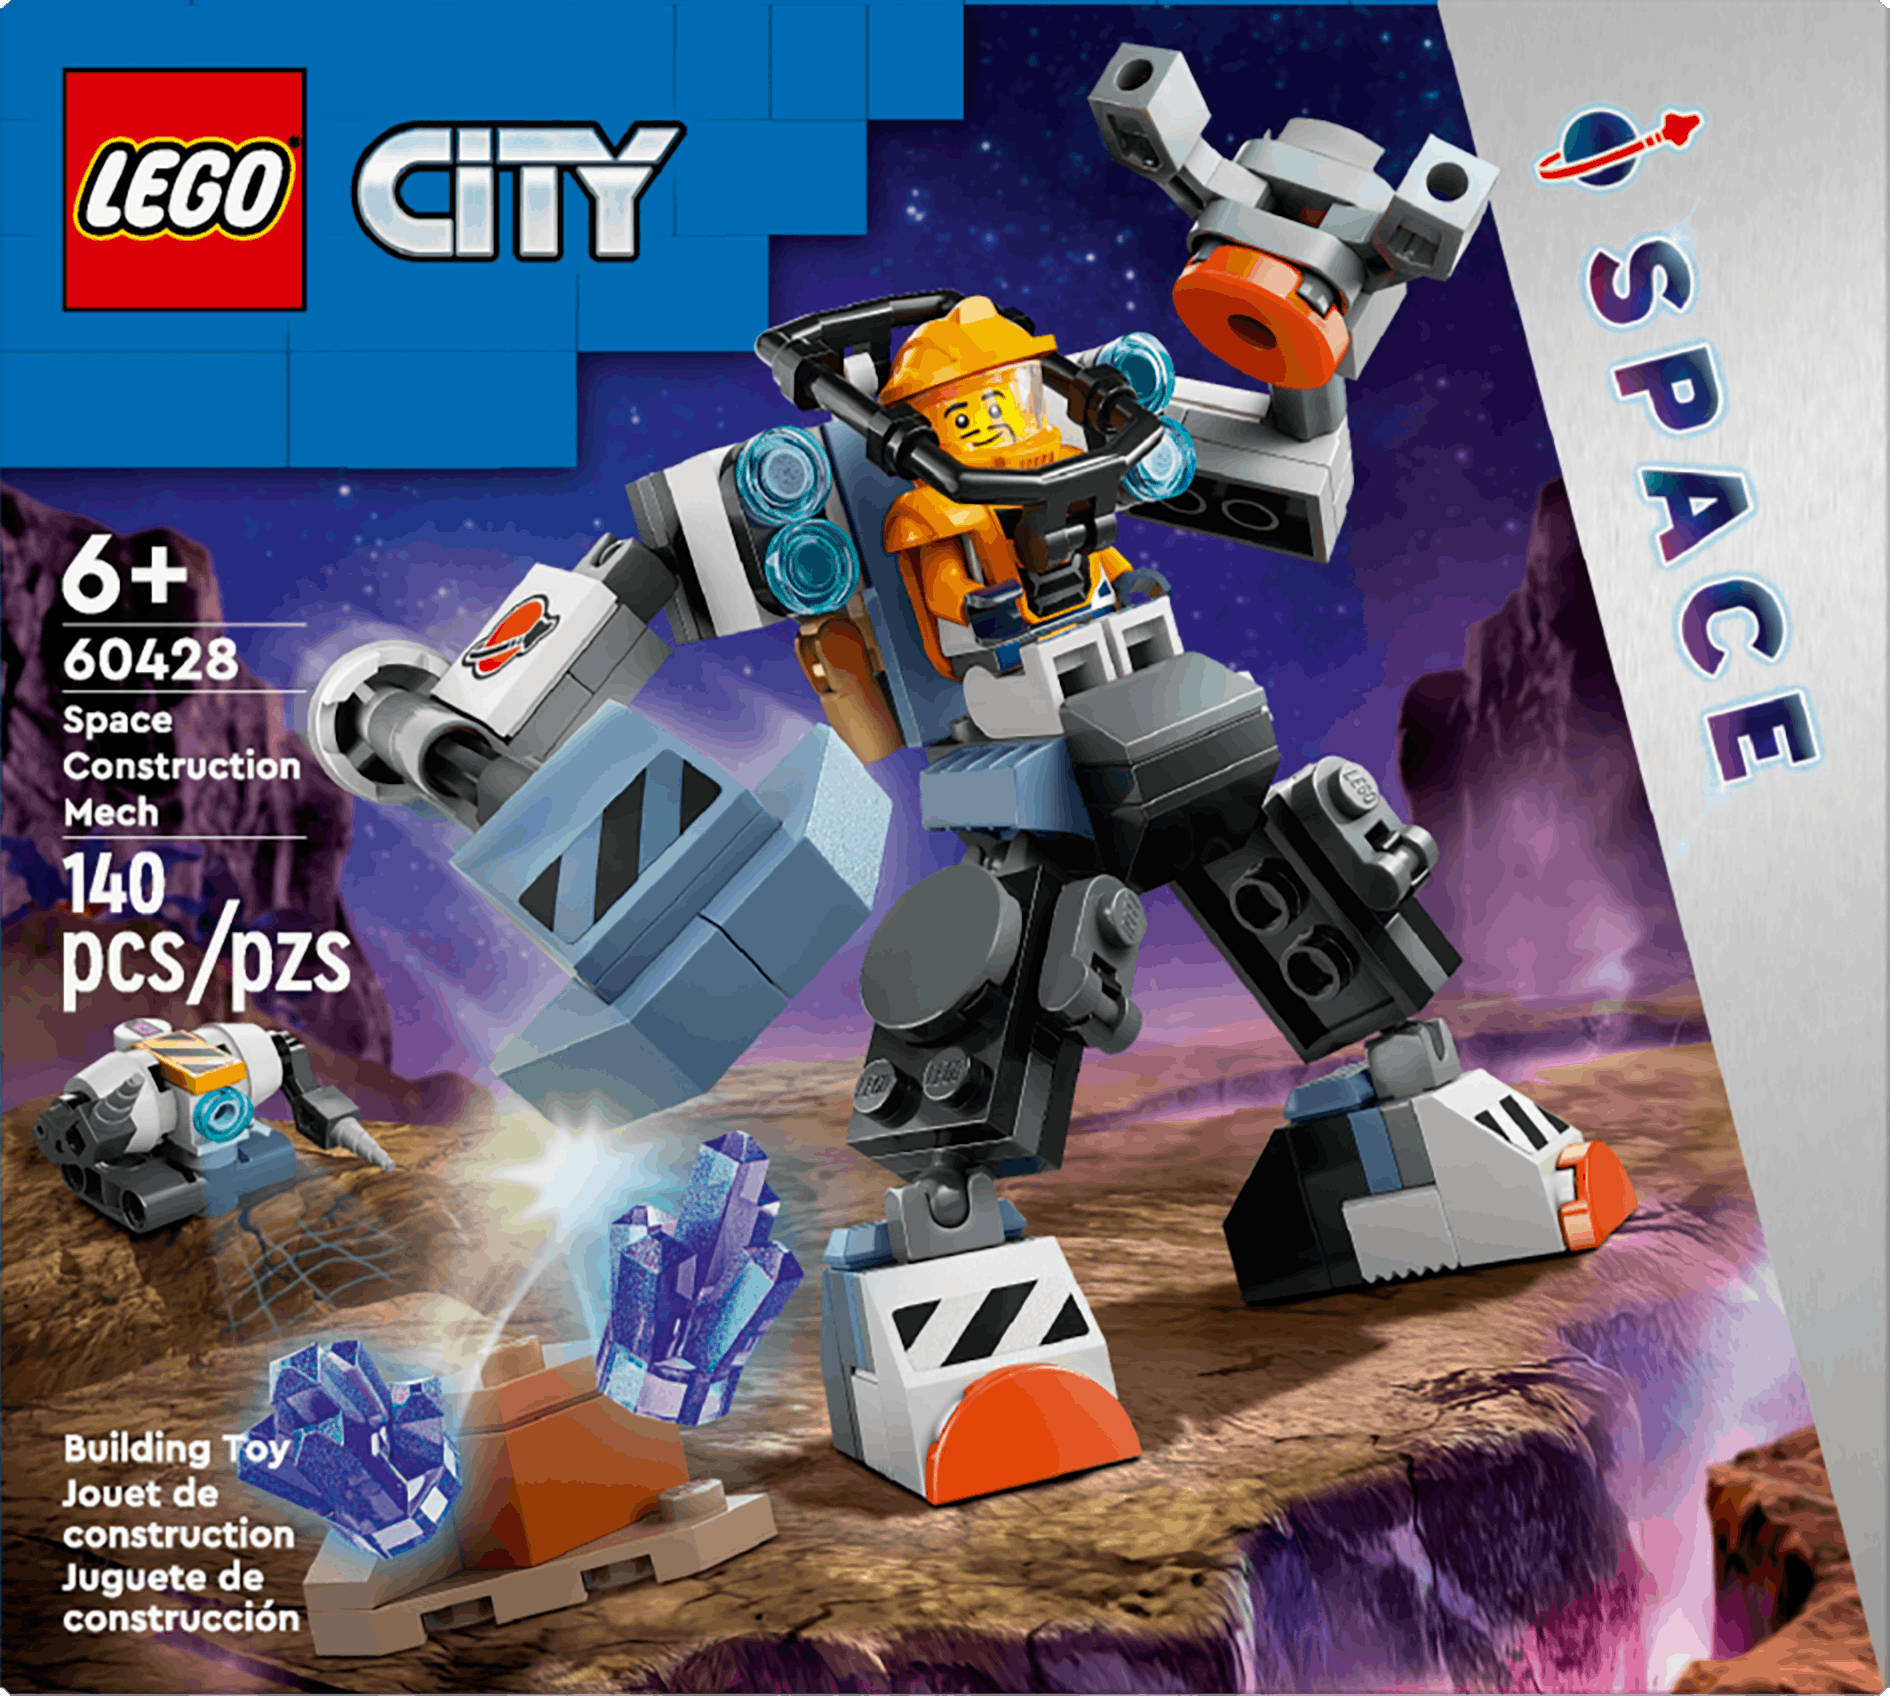 Lego City Ruimtebouwmecha (60428)